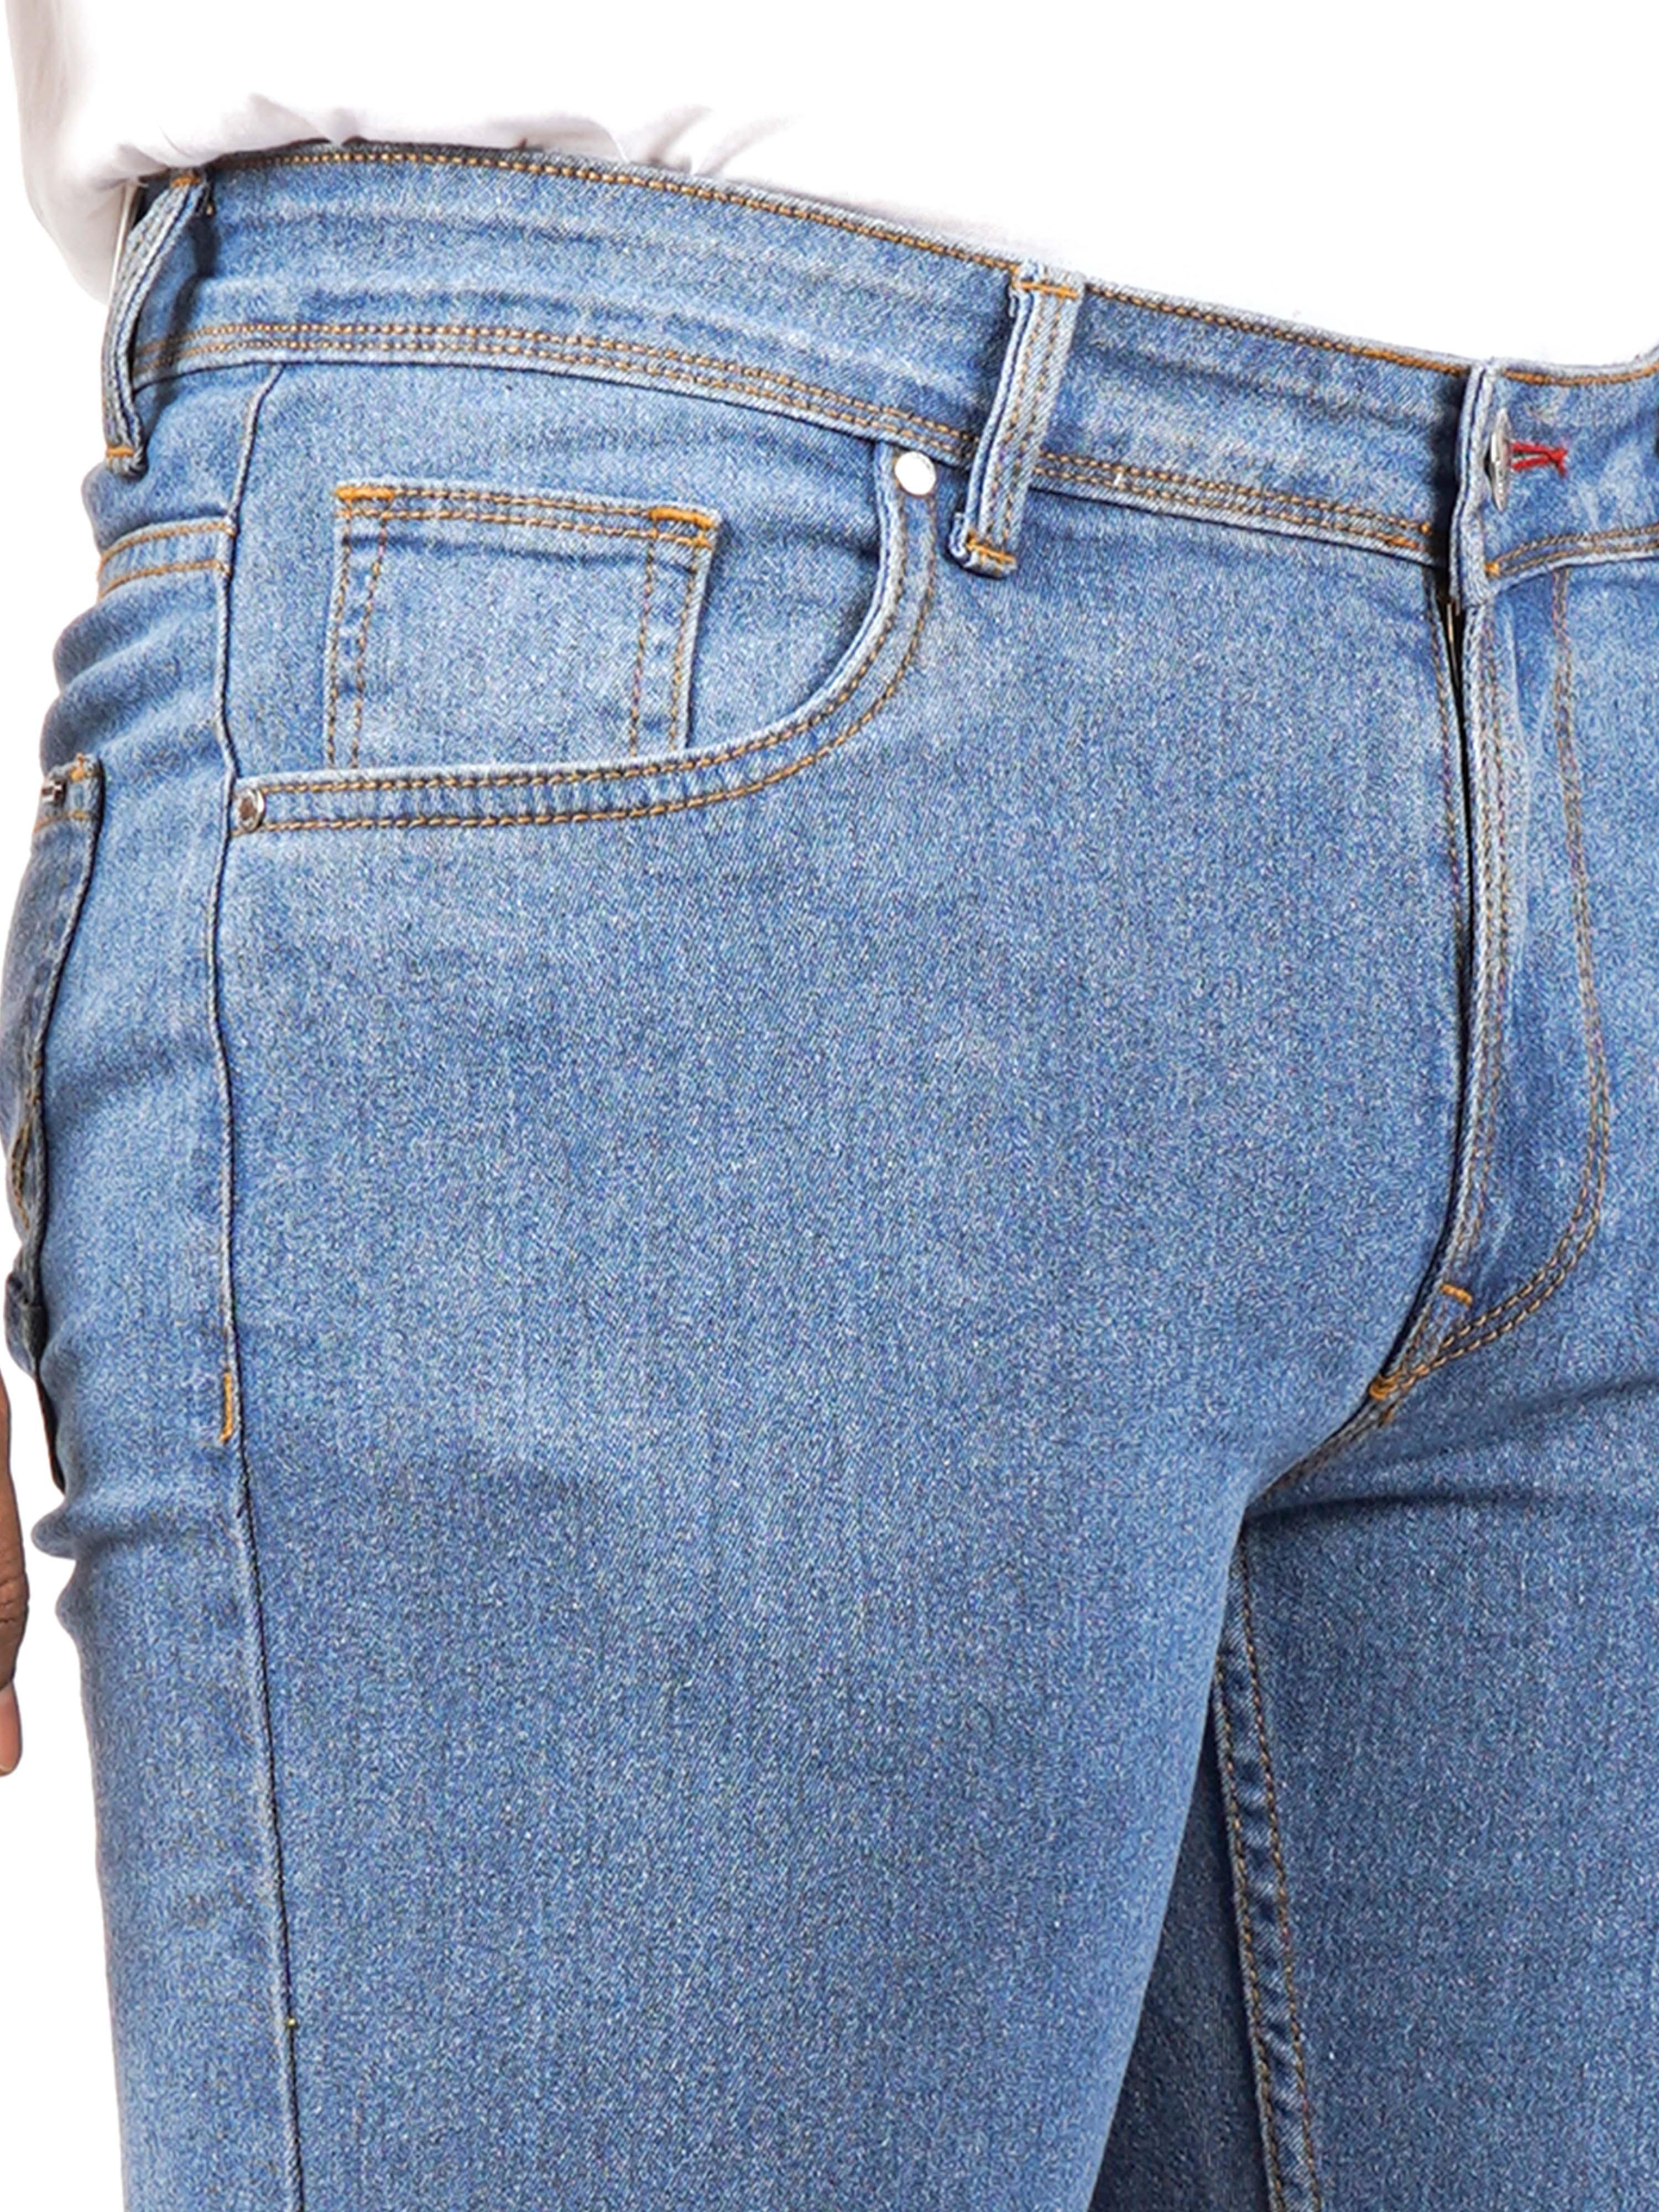 Men Regular Slim-Fit Light Blue Jeans - Triggerjeans